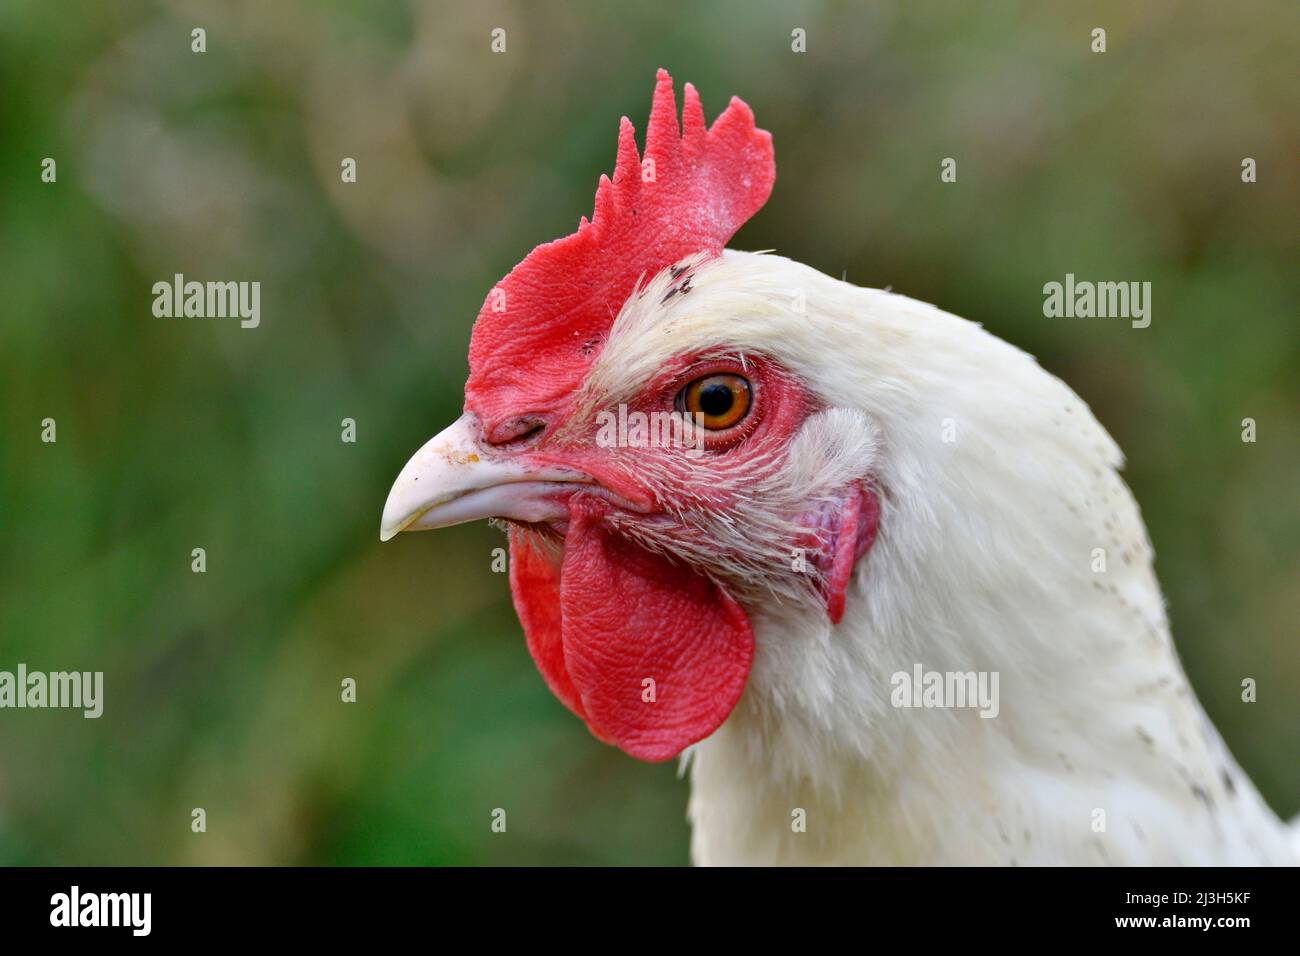 France, Doubs, birds, poultry, hen, portrait Stock Photo